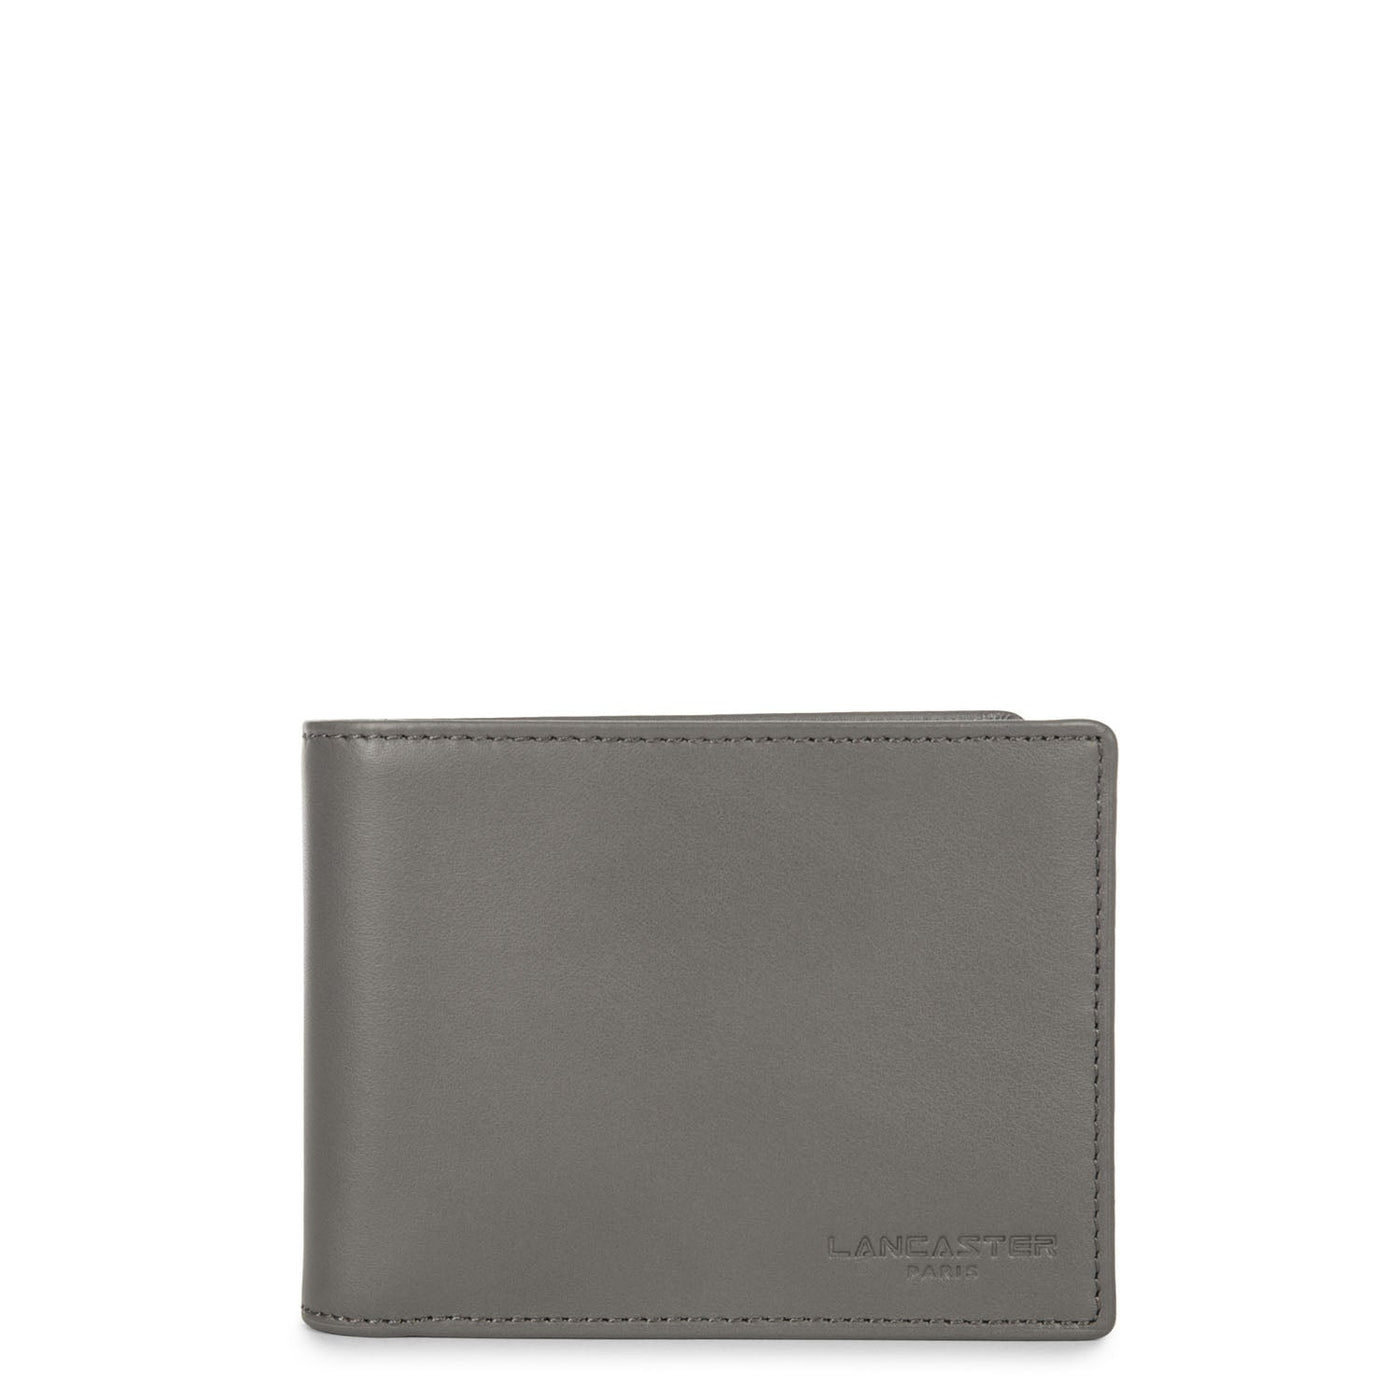 wallet - capital #couleur_gris